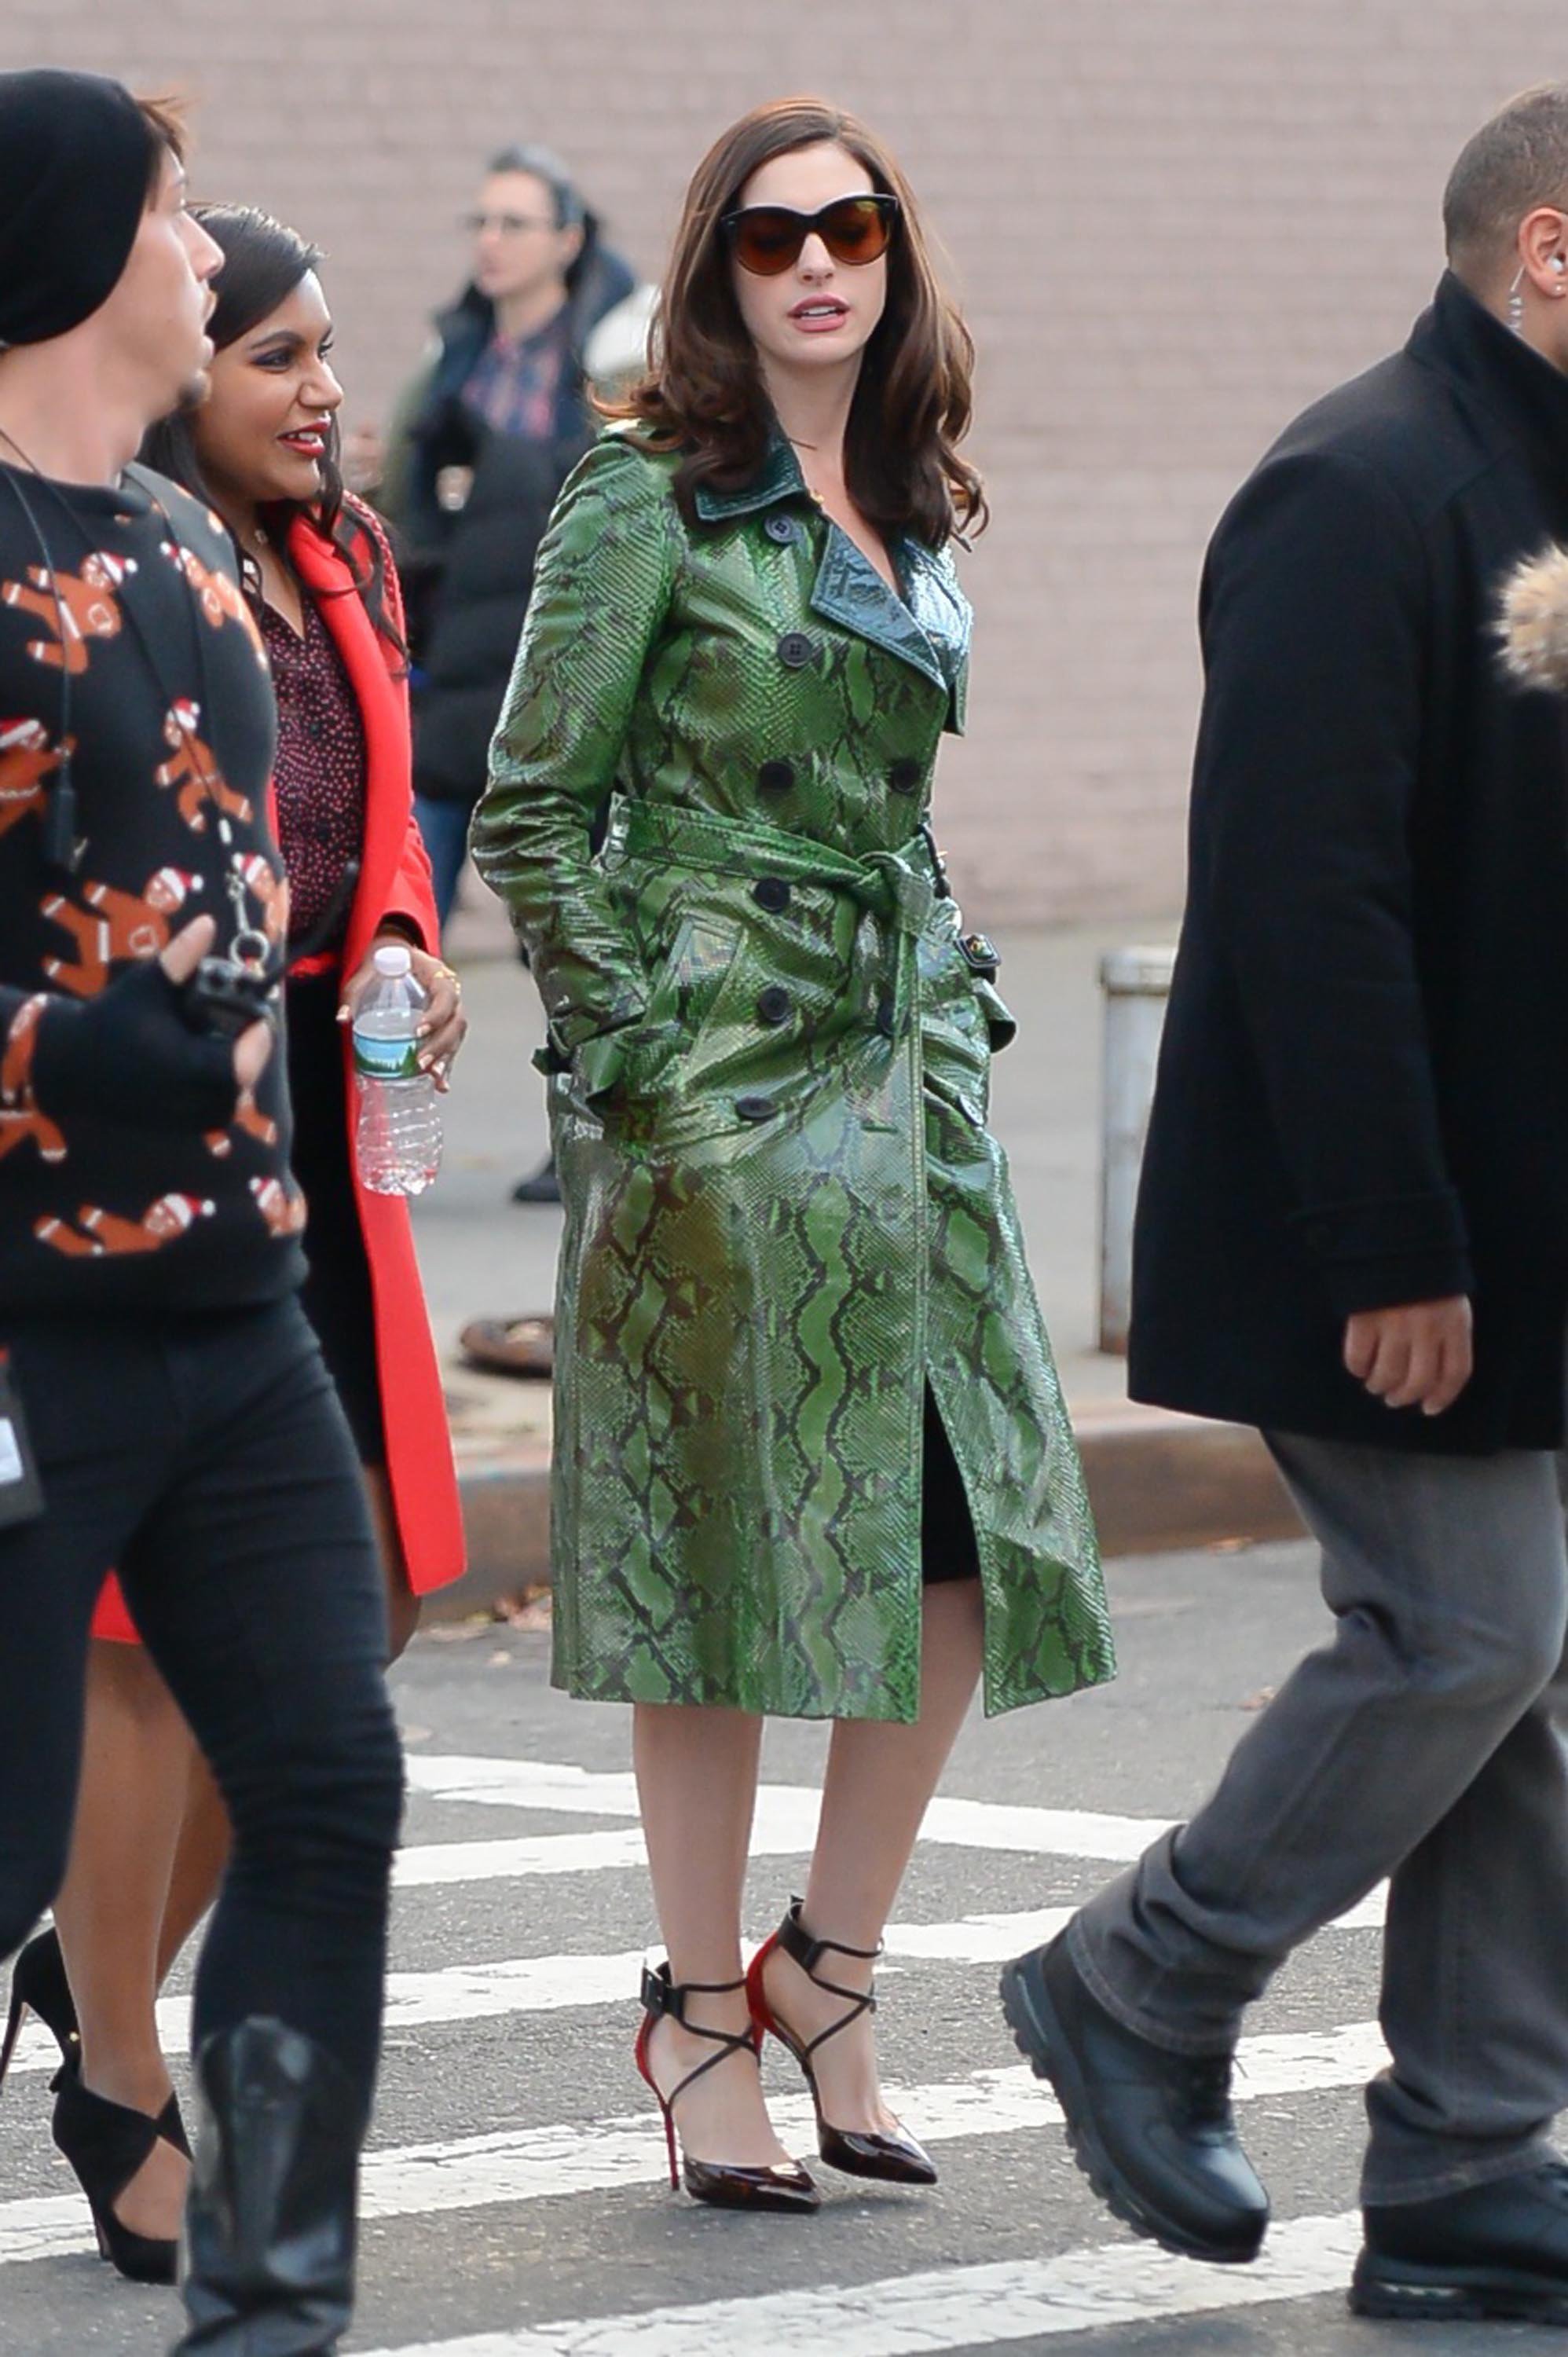 Anne Hathaway is seen filming Ocean’s